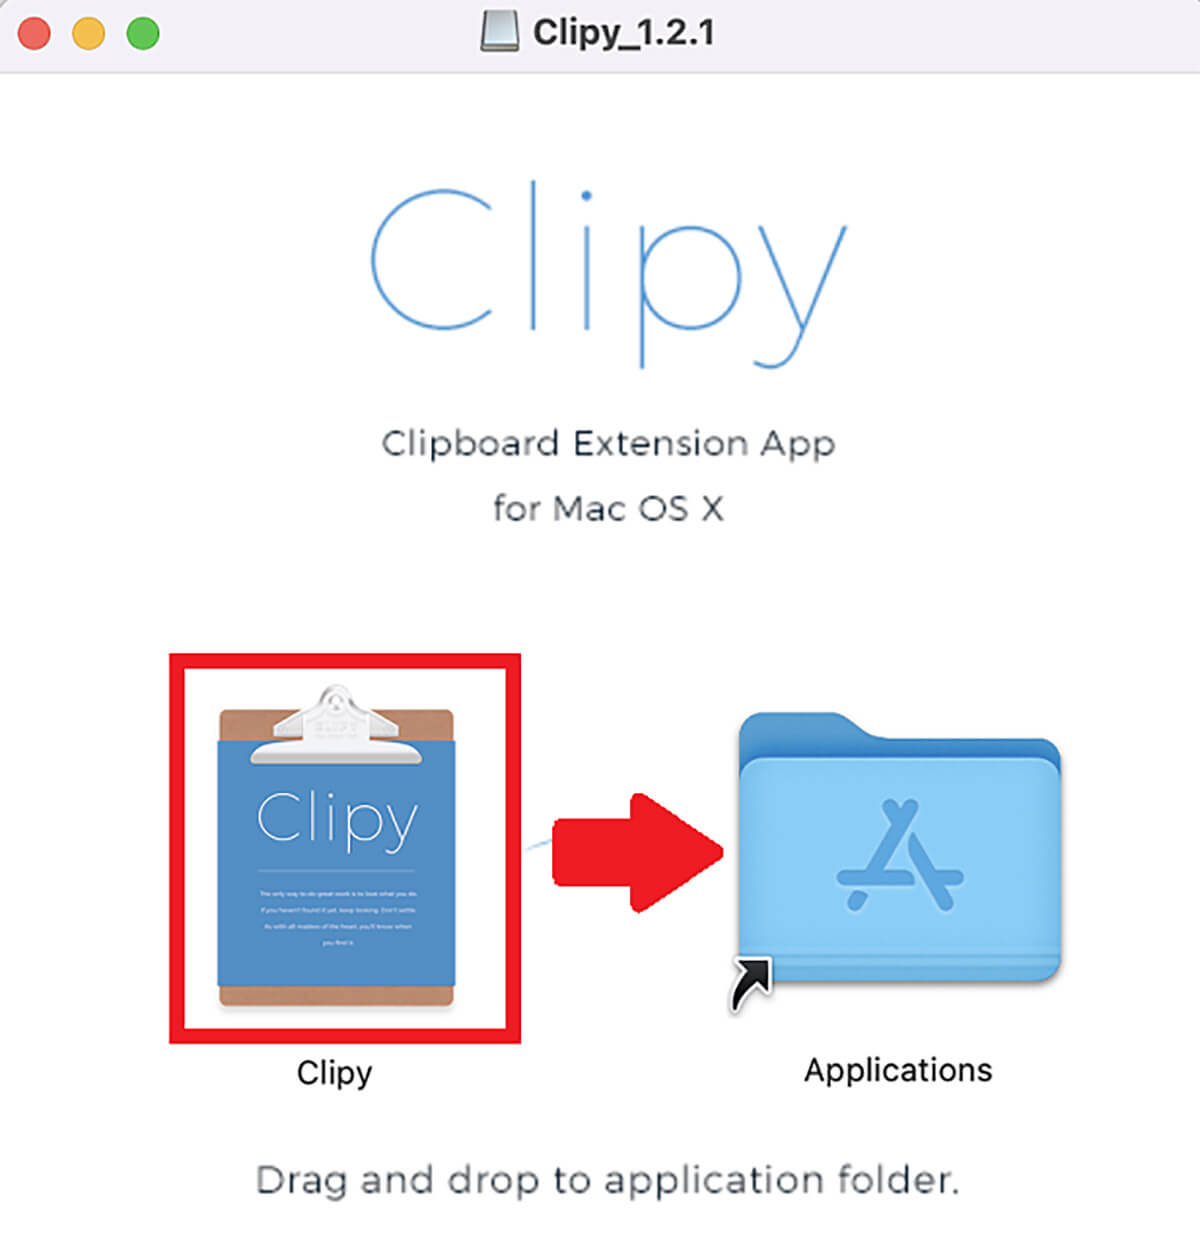 「Clipy」アプリのダウンロード/インストールと設定・履歴管理方法5